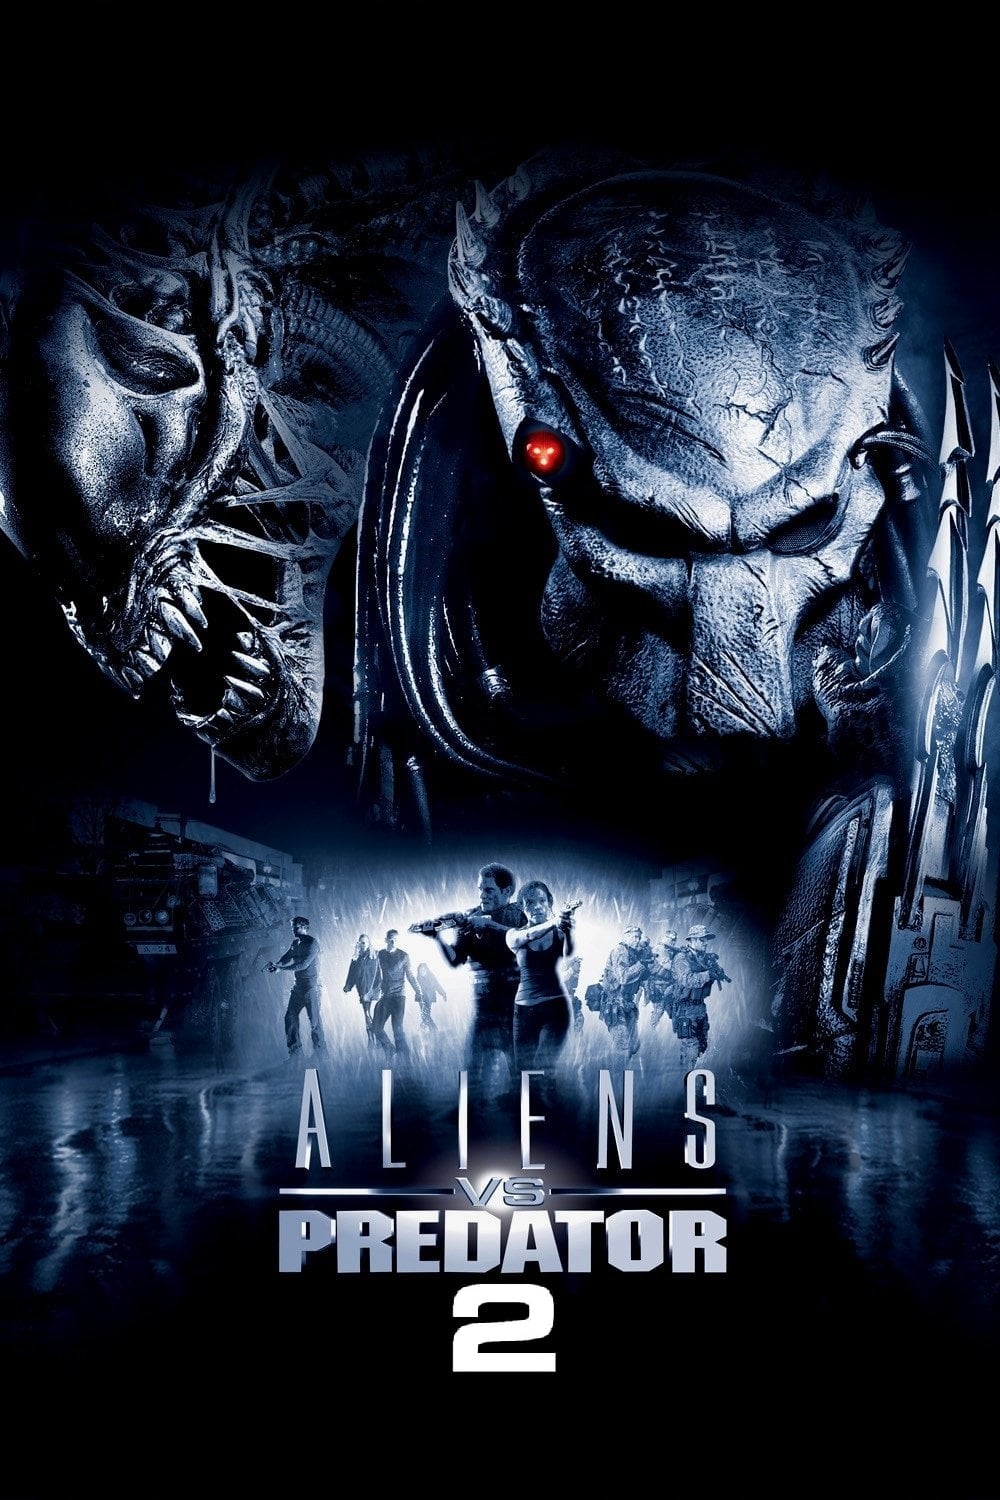 Poster for the movie "Aliens vs. Predator 2"